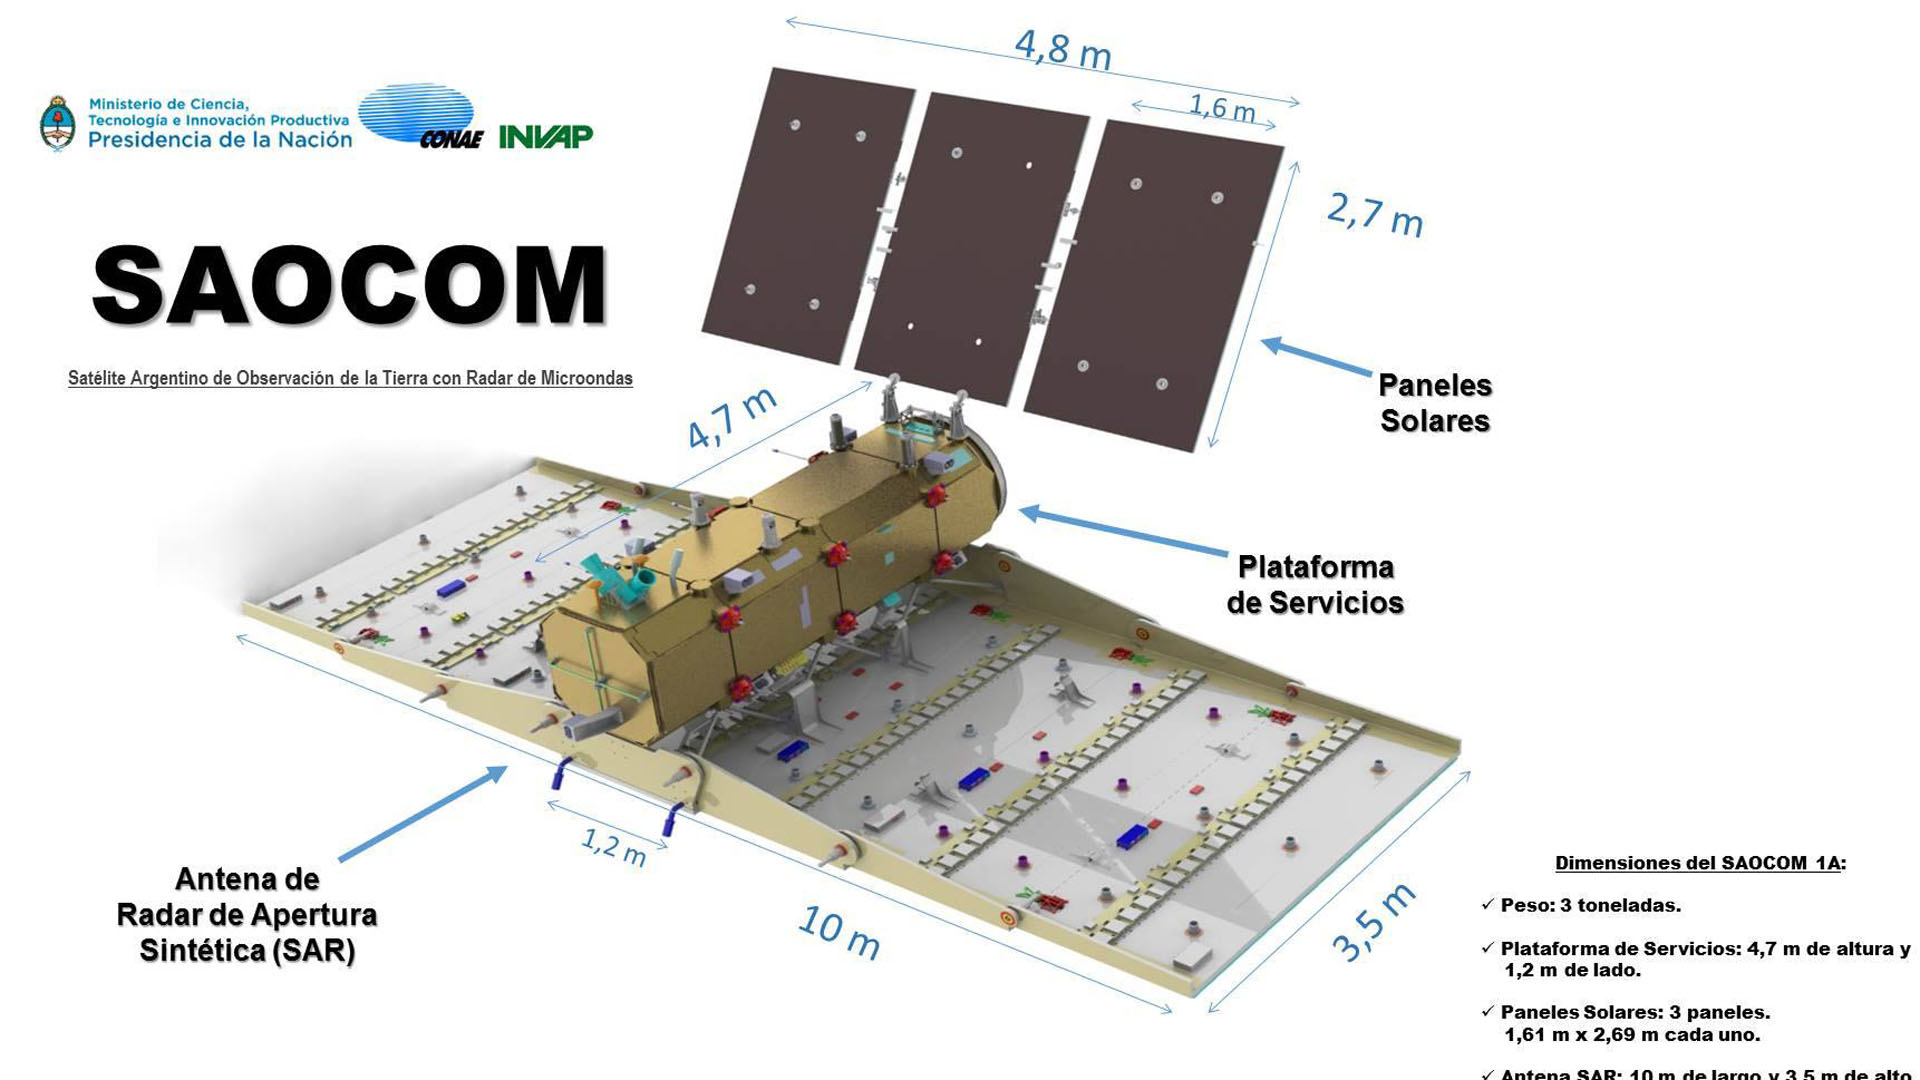 Características técnicas del Saocom 1A